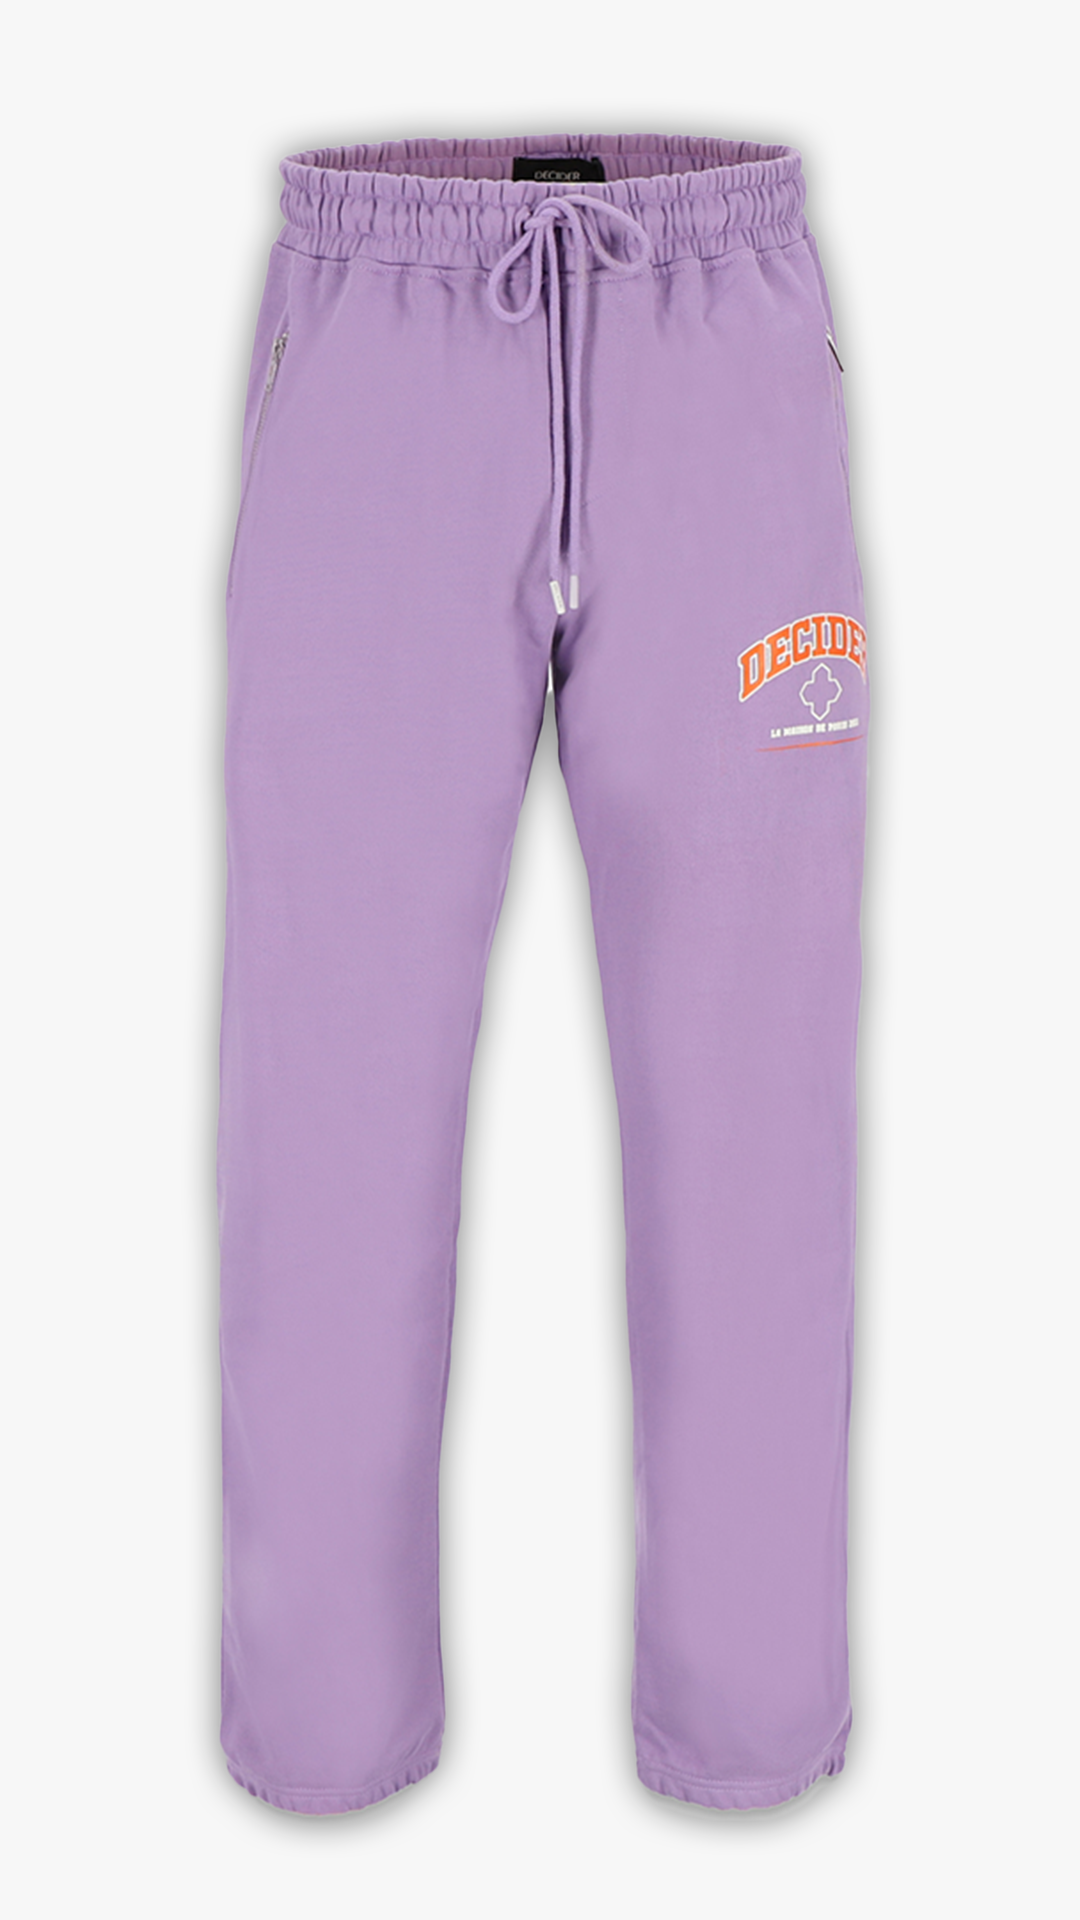 Pastel Purple Sweatpants für Frauen und Herren von Decider mit orangefarbenem Logo - Breite Jogginghose in trendigem Pastell-Lila.